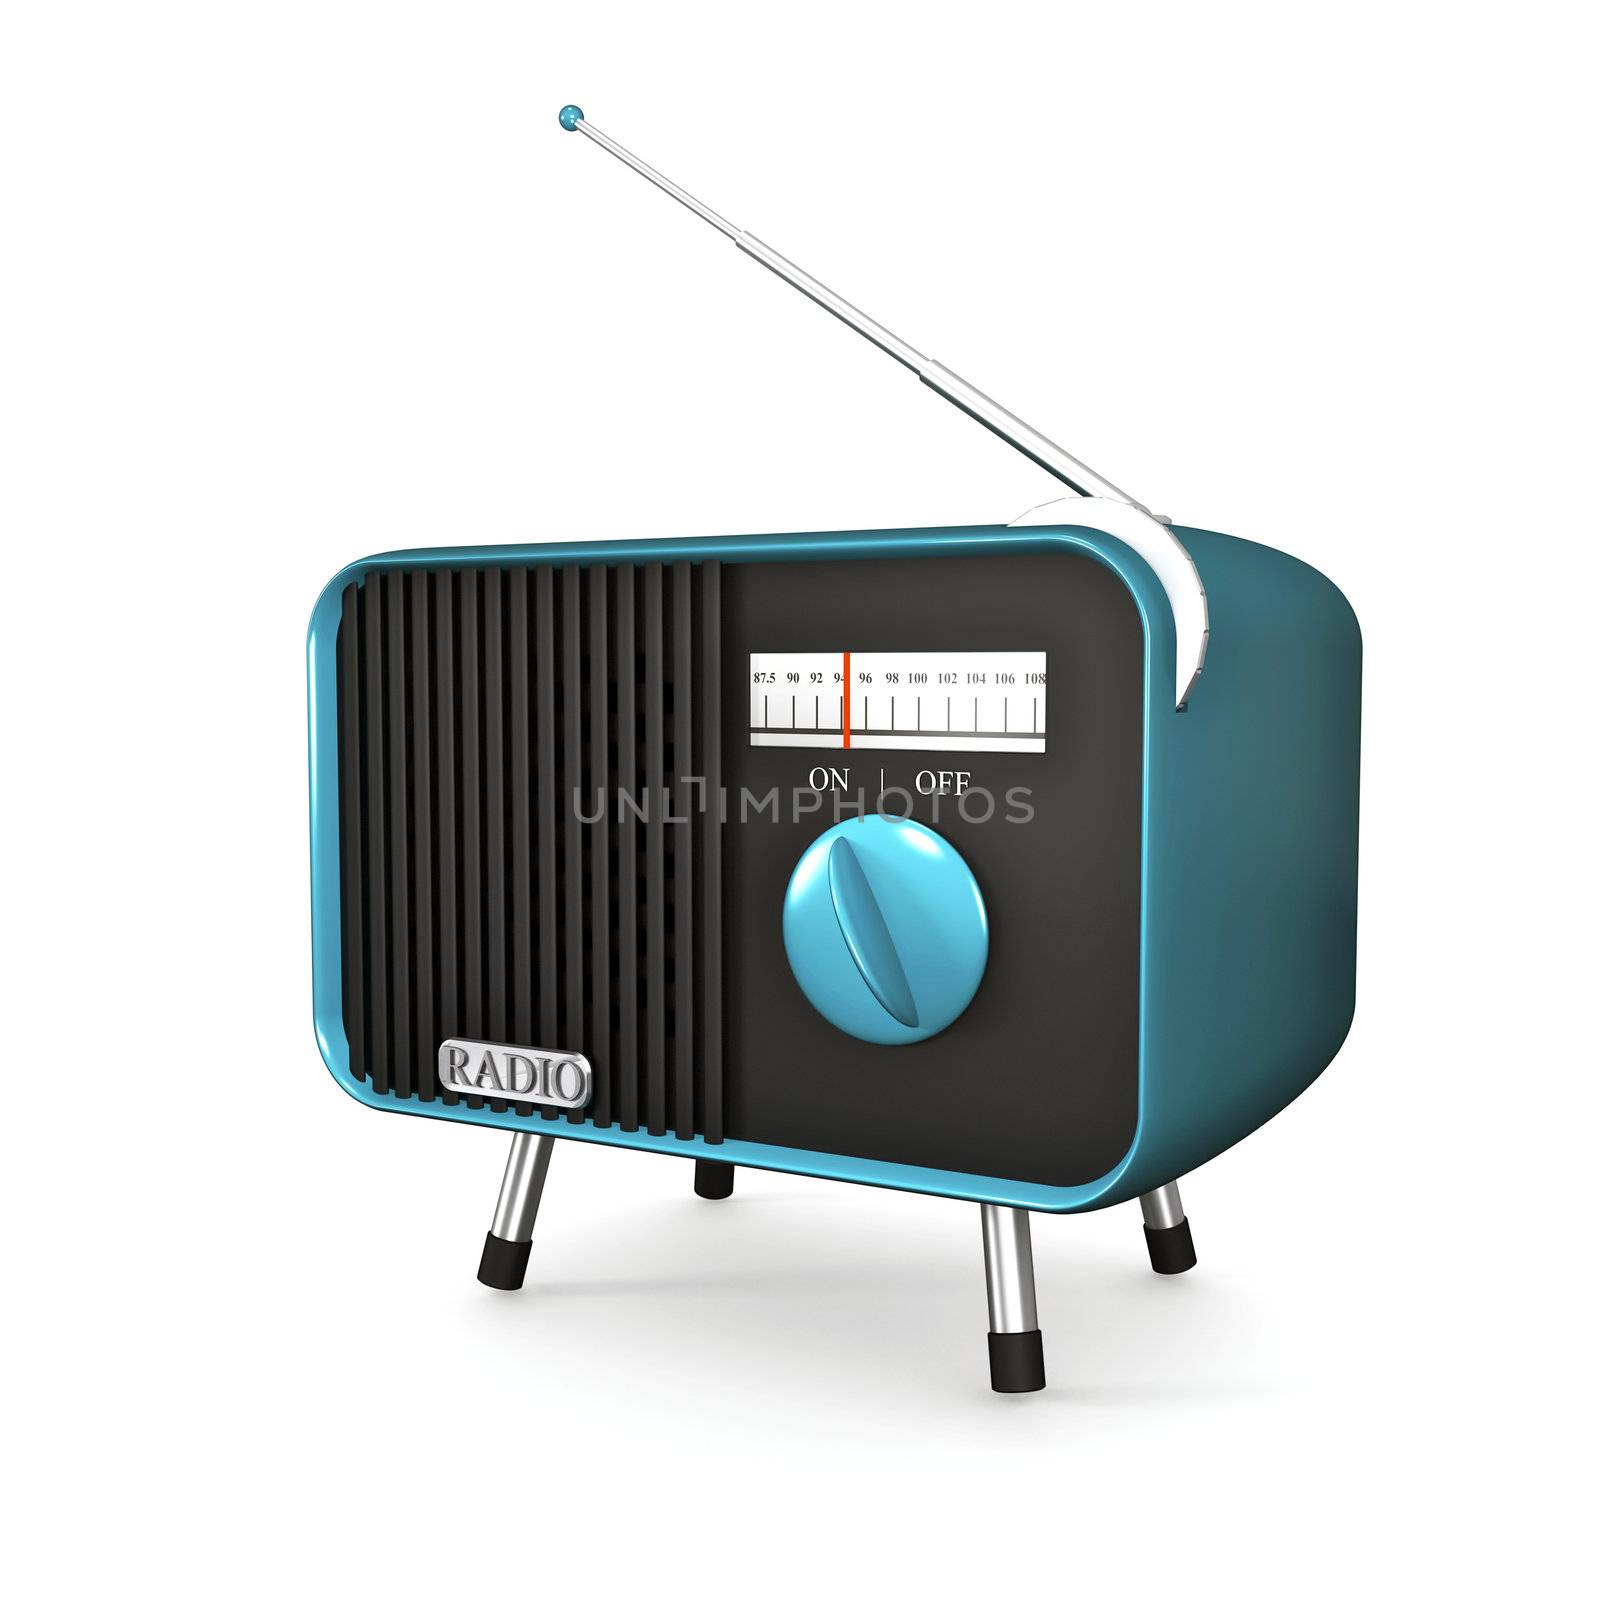 Turquoise retro radio by magraphics